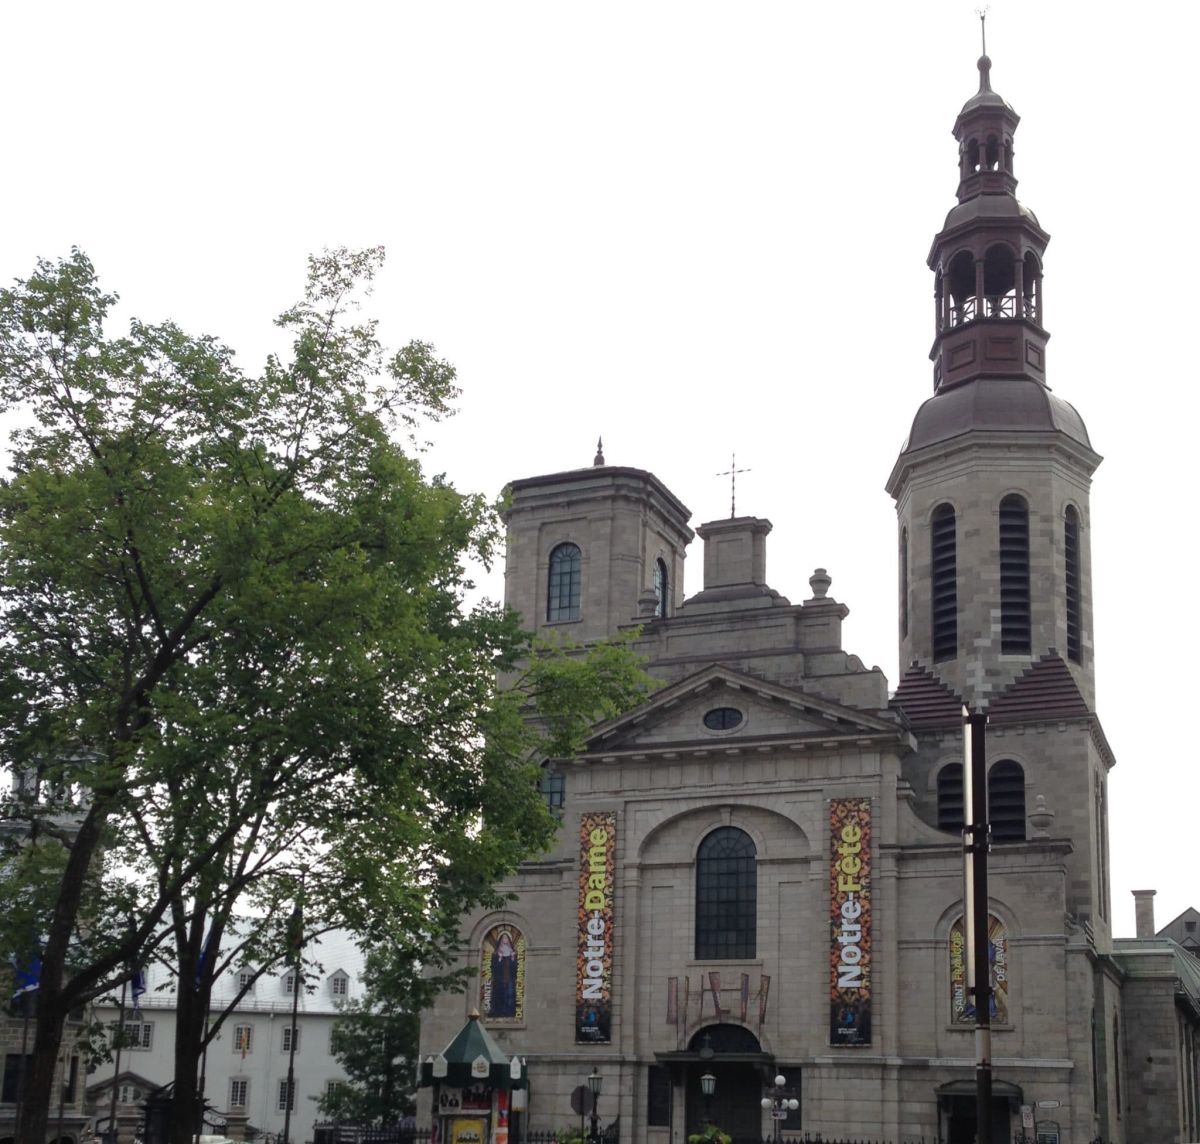 Quebec City Notre Dame